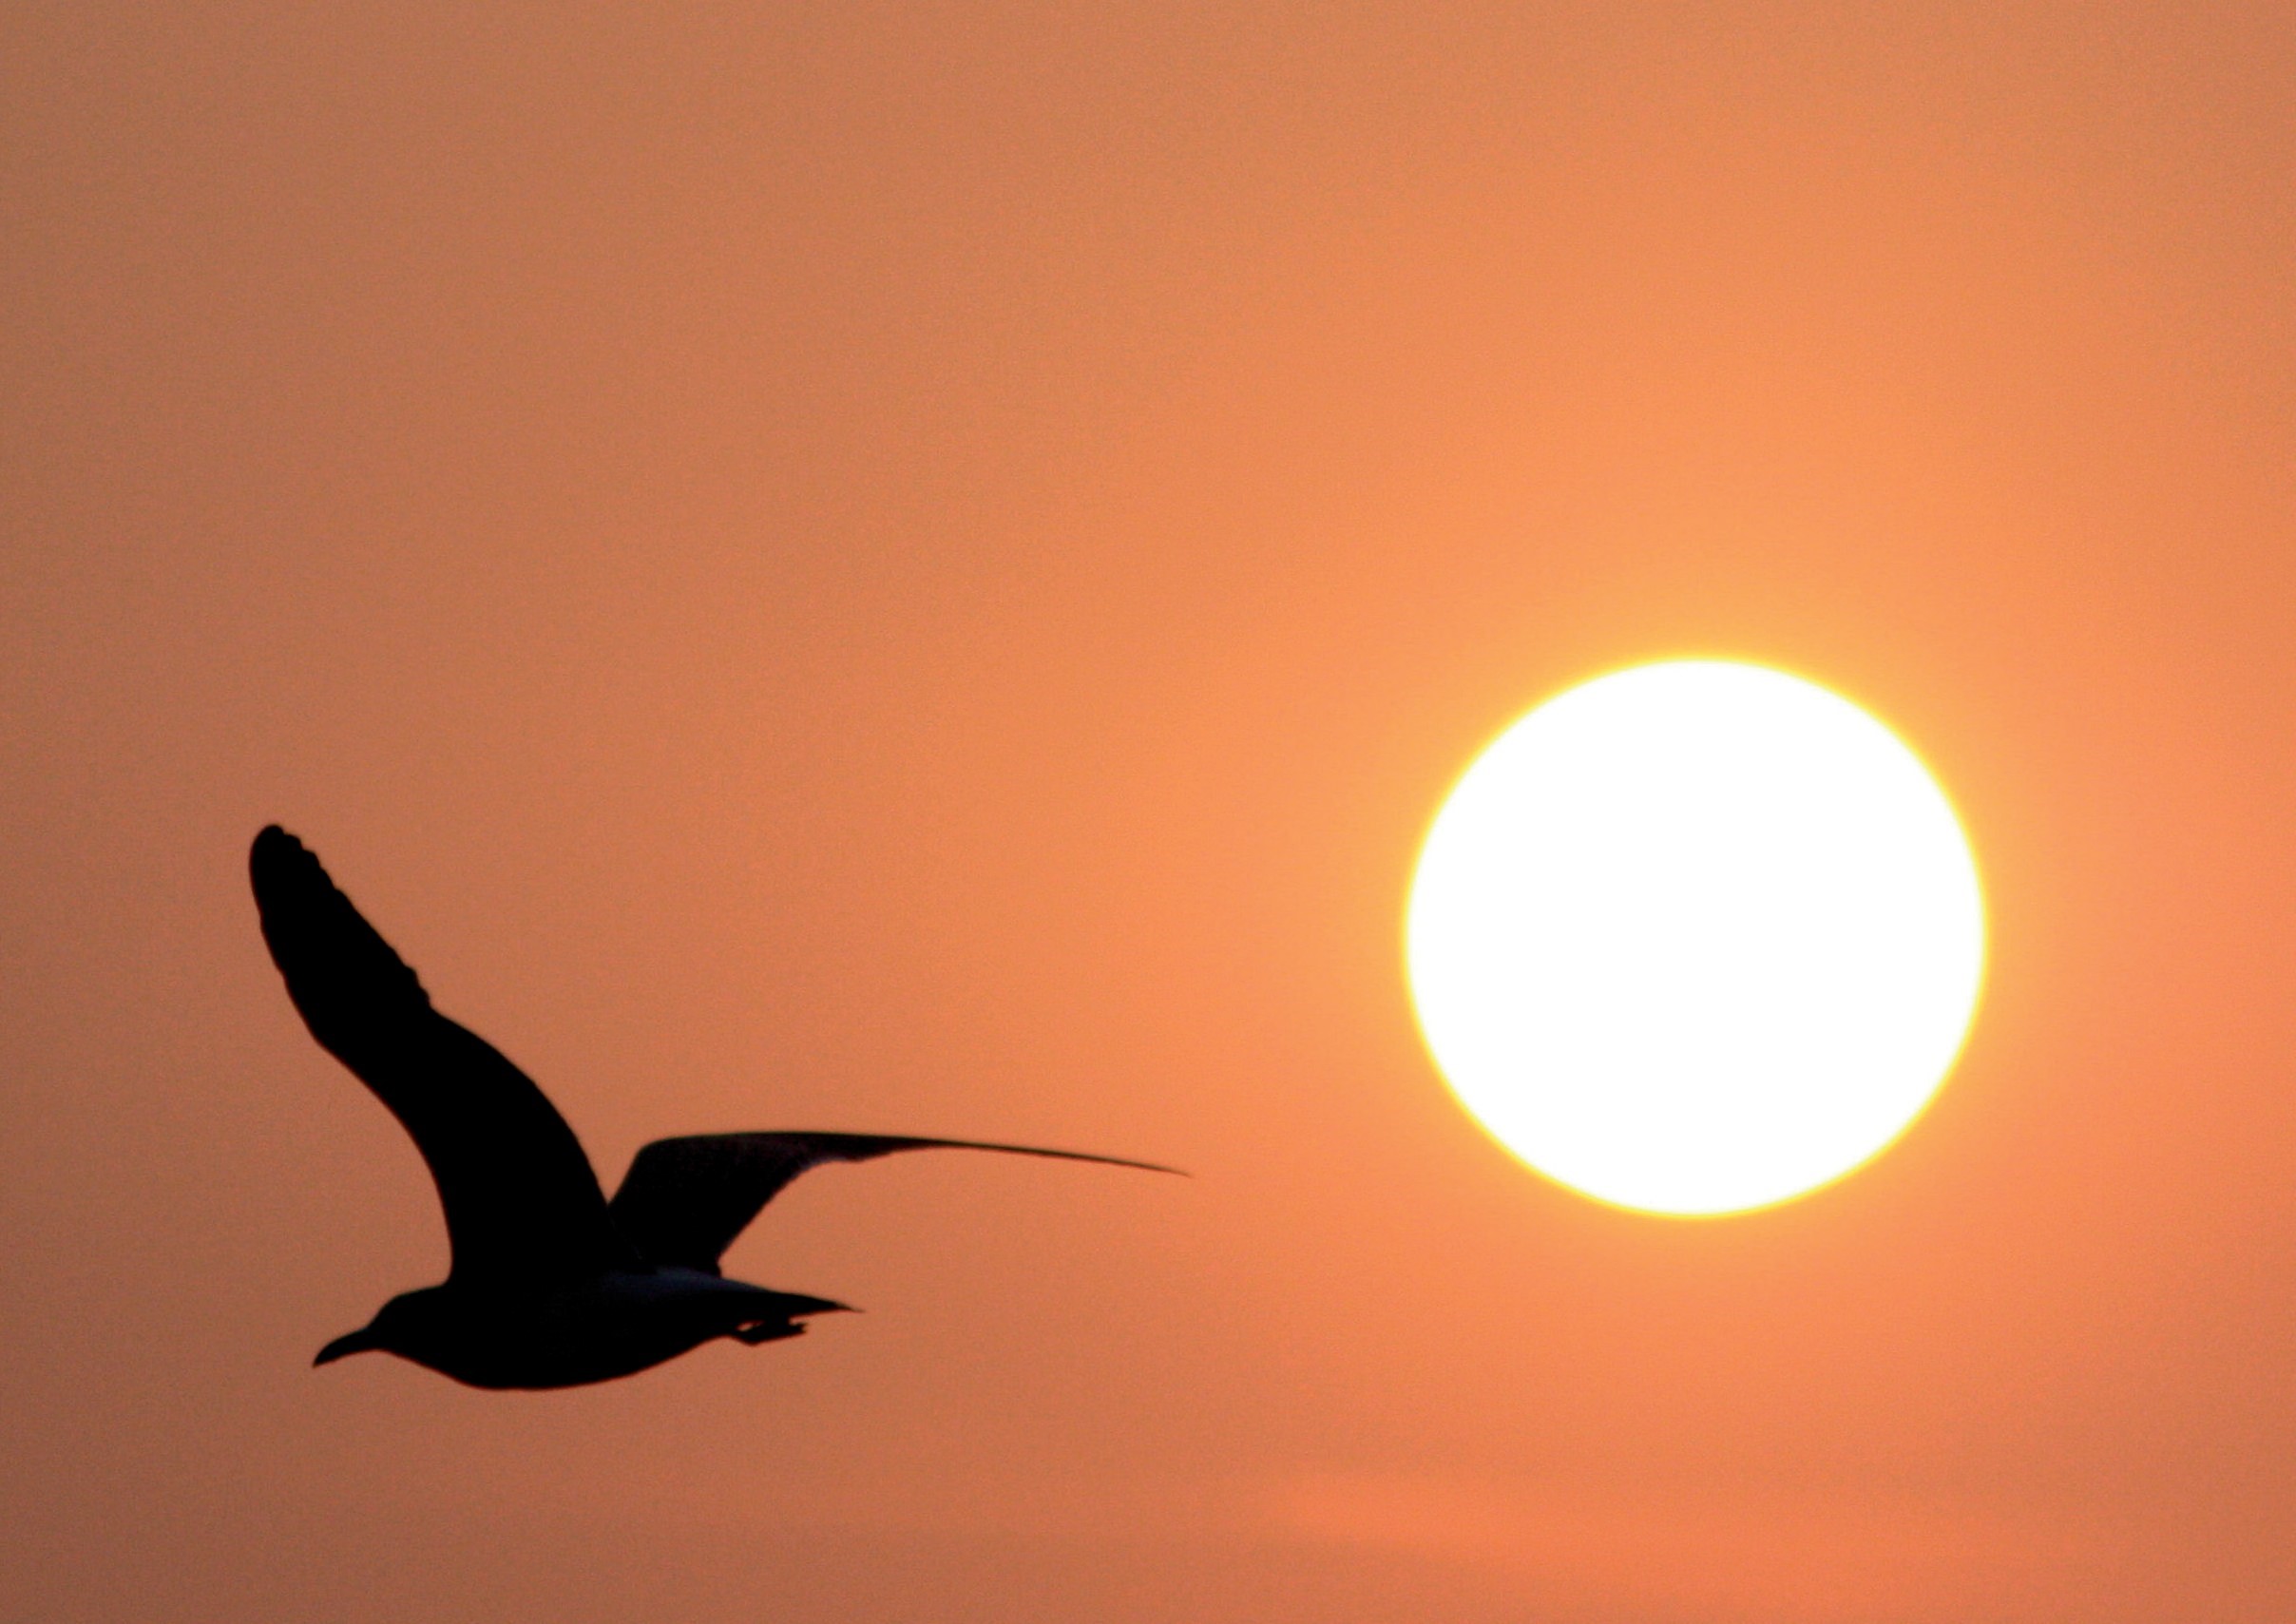 bird flying in sunset sky